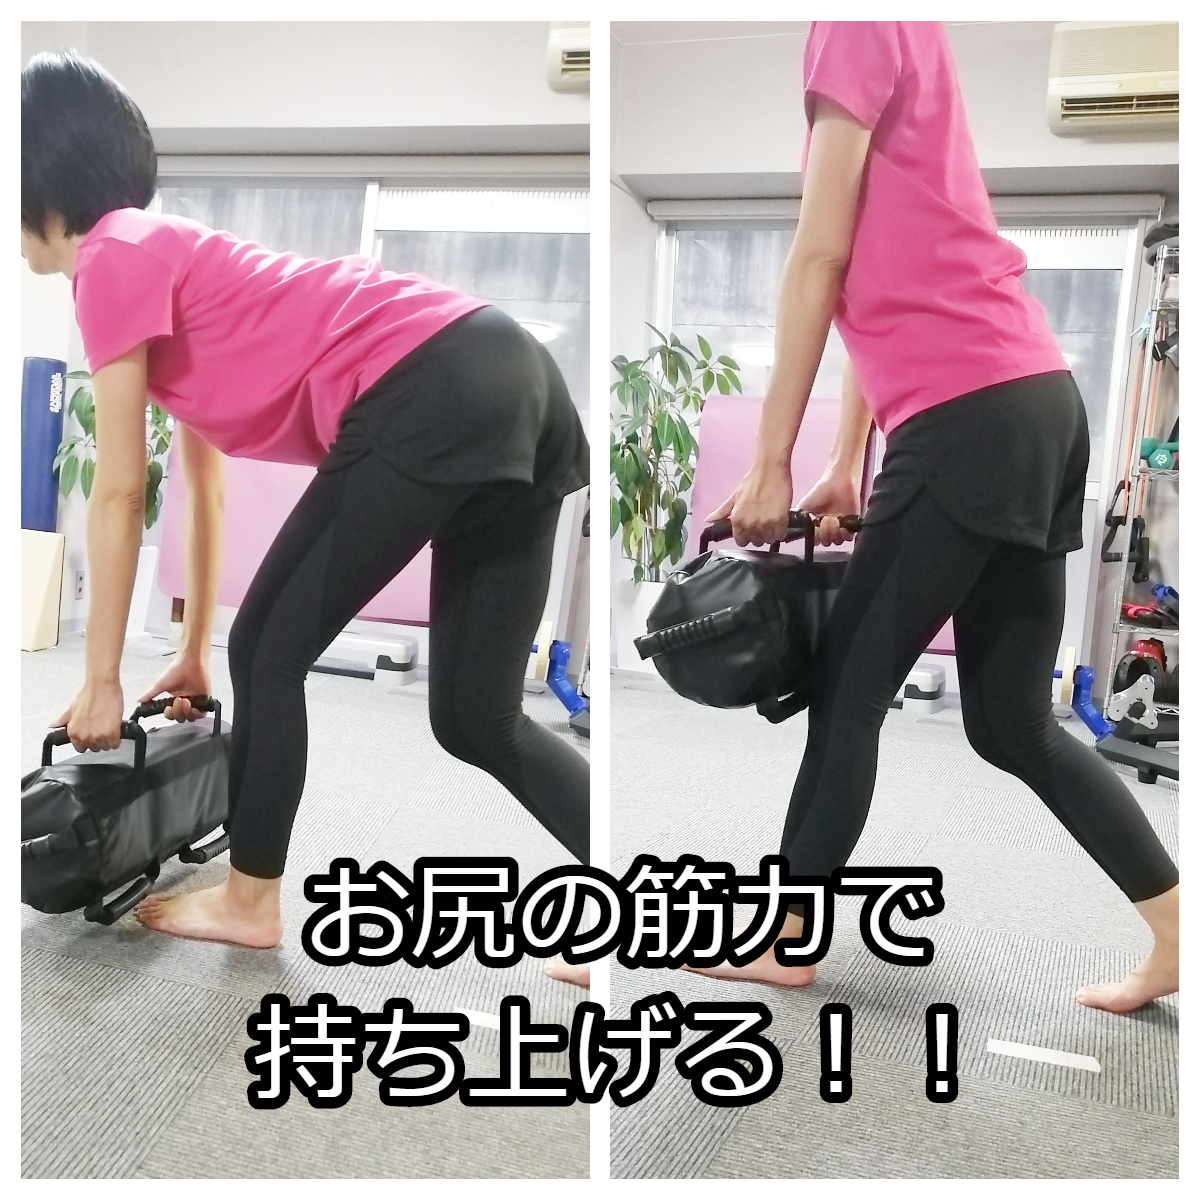 ヒップアップの必須条件 股関節に体重を乗せて動けますか 名古屋 栄のo脚改善 下半身ダイエット特化型パーソナルトレーニングジム